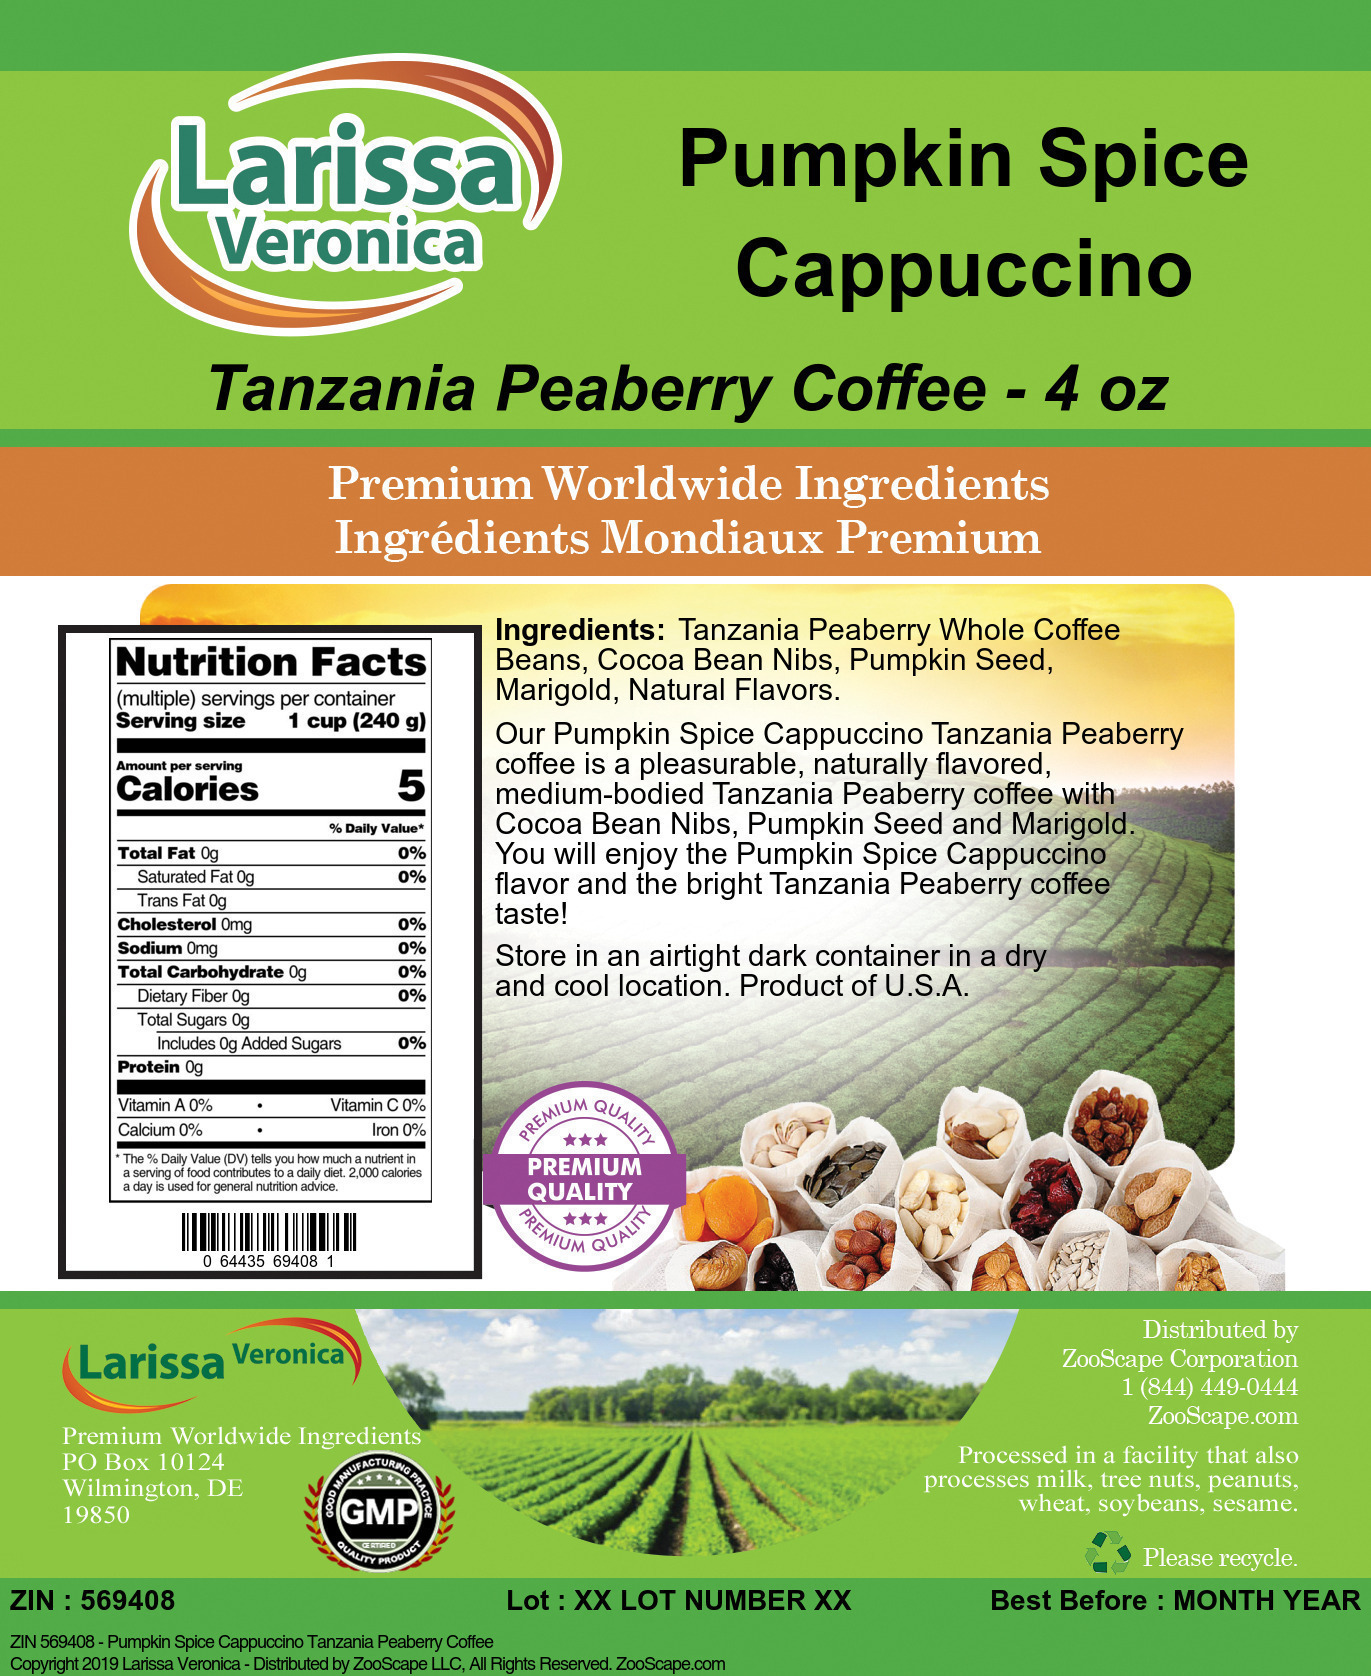 Pumpkin Spice Cappuccino Tanzania Peaberry Coffee - Label